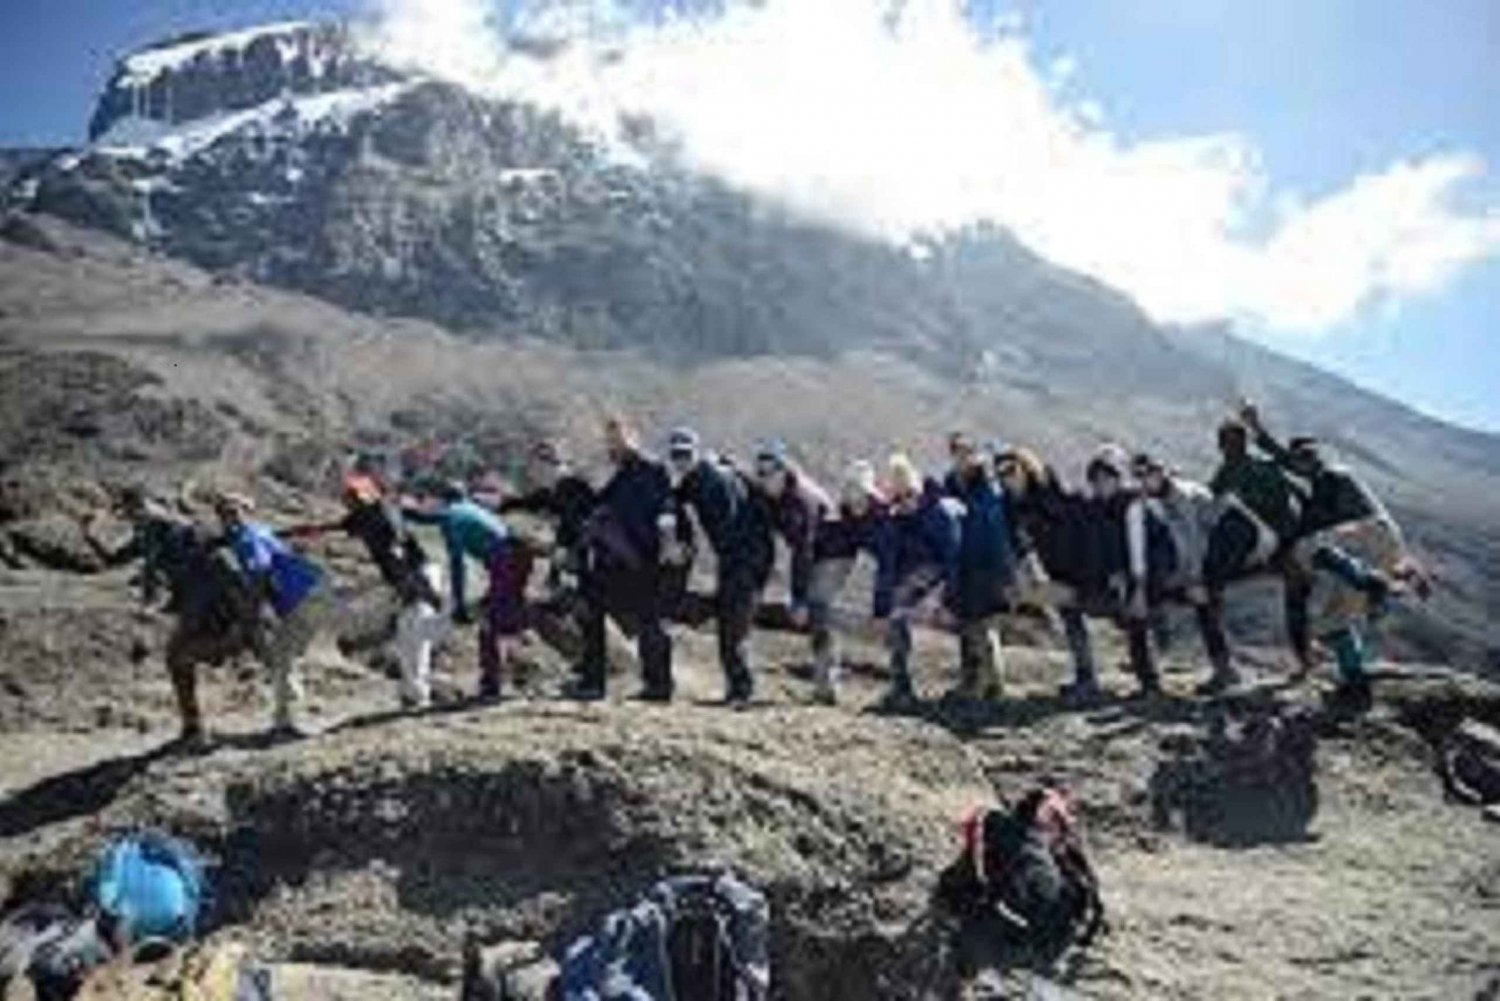 Summit Africa Peak In 9-Days Via Lemosho Route